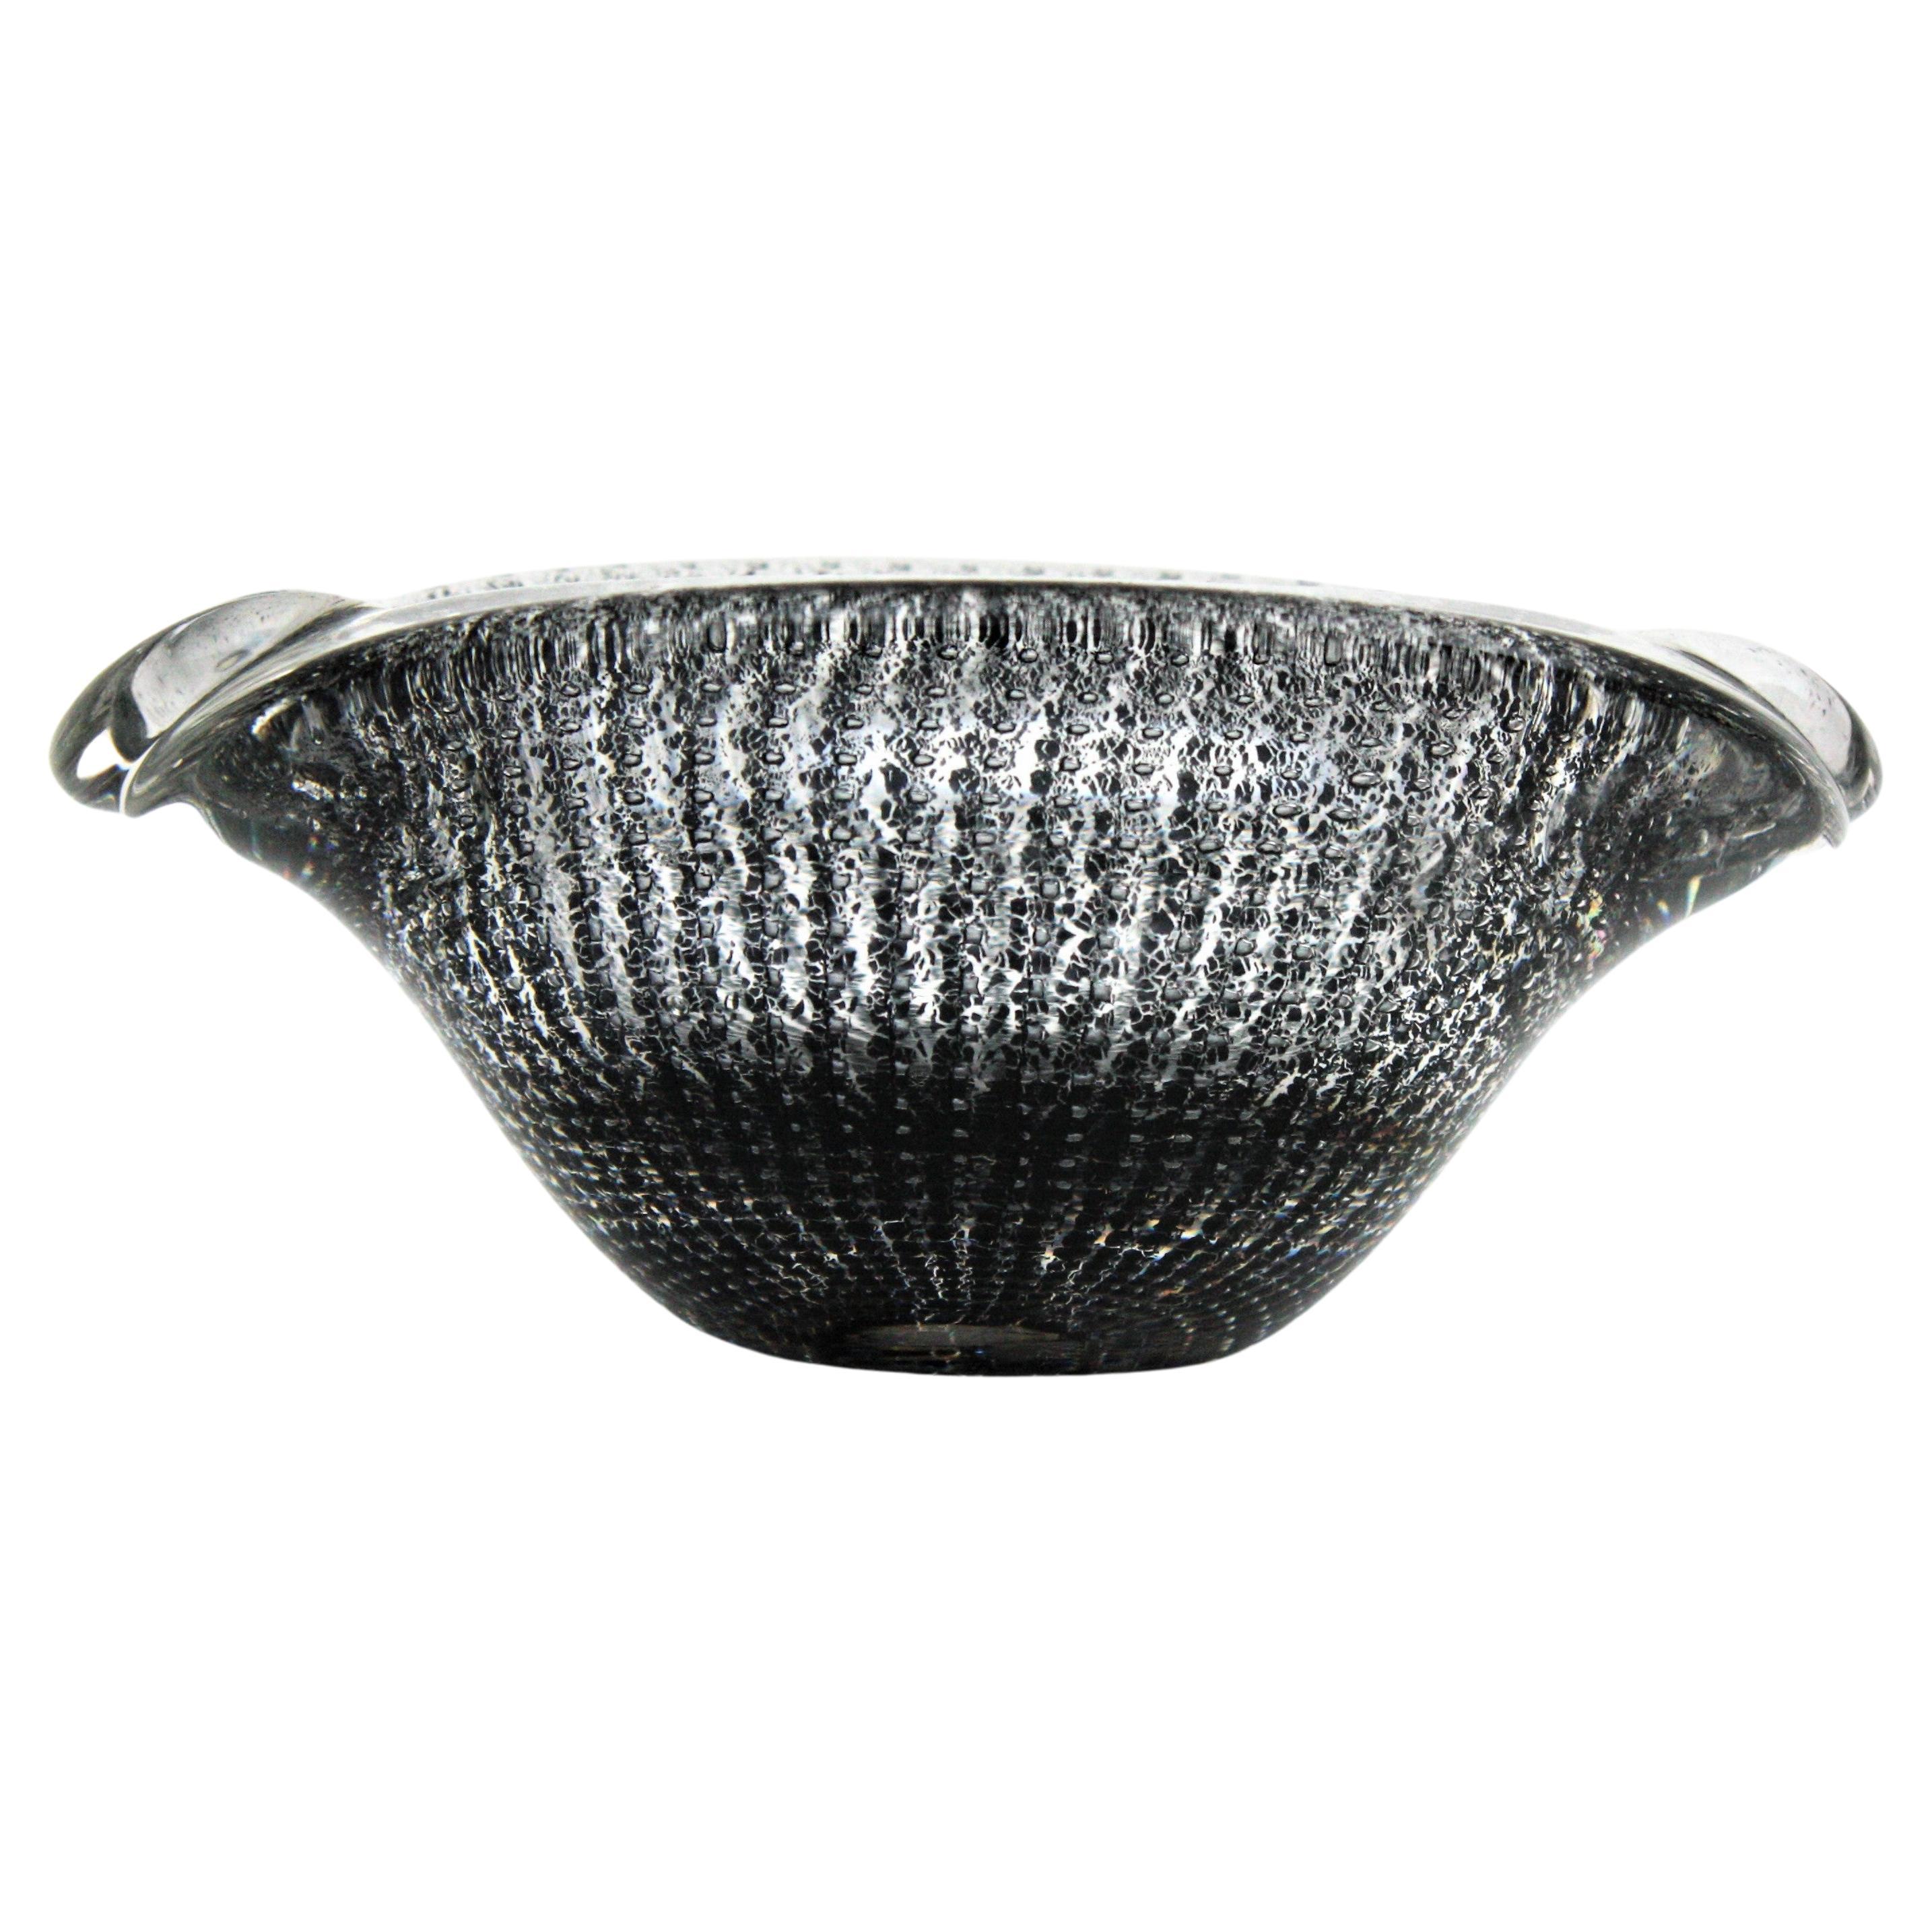 Archimede Seguso Murano Bullicante Black & Clear Art Glass Bowl or Ashtray